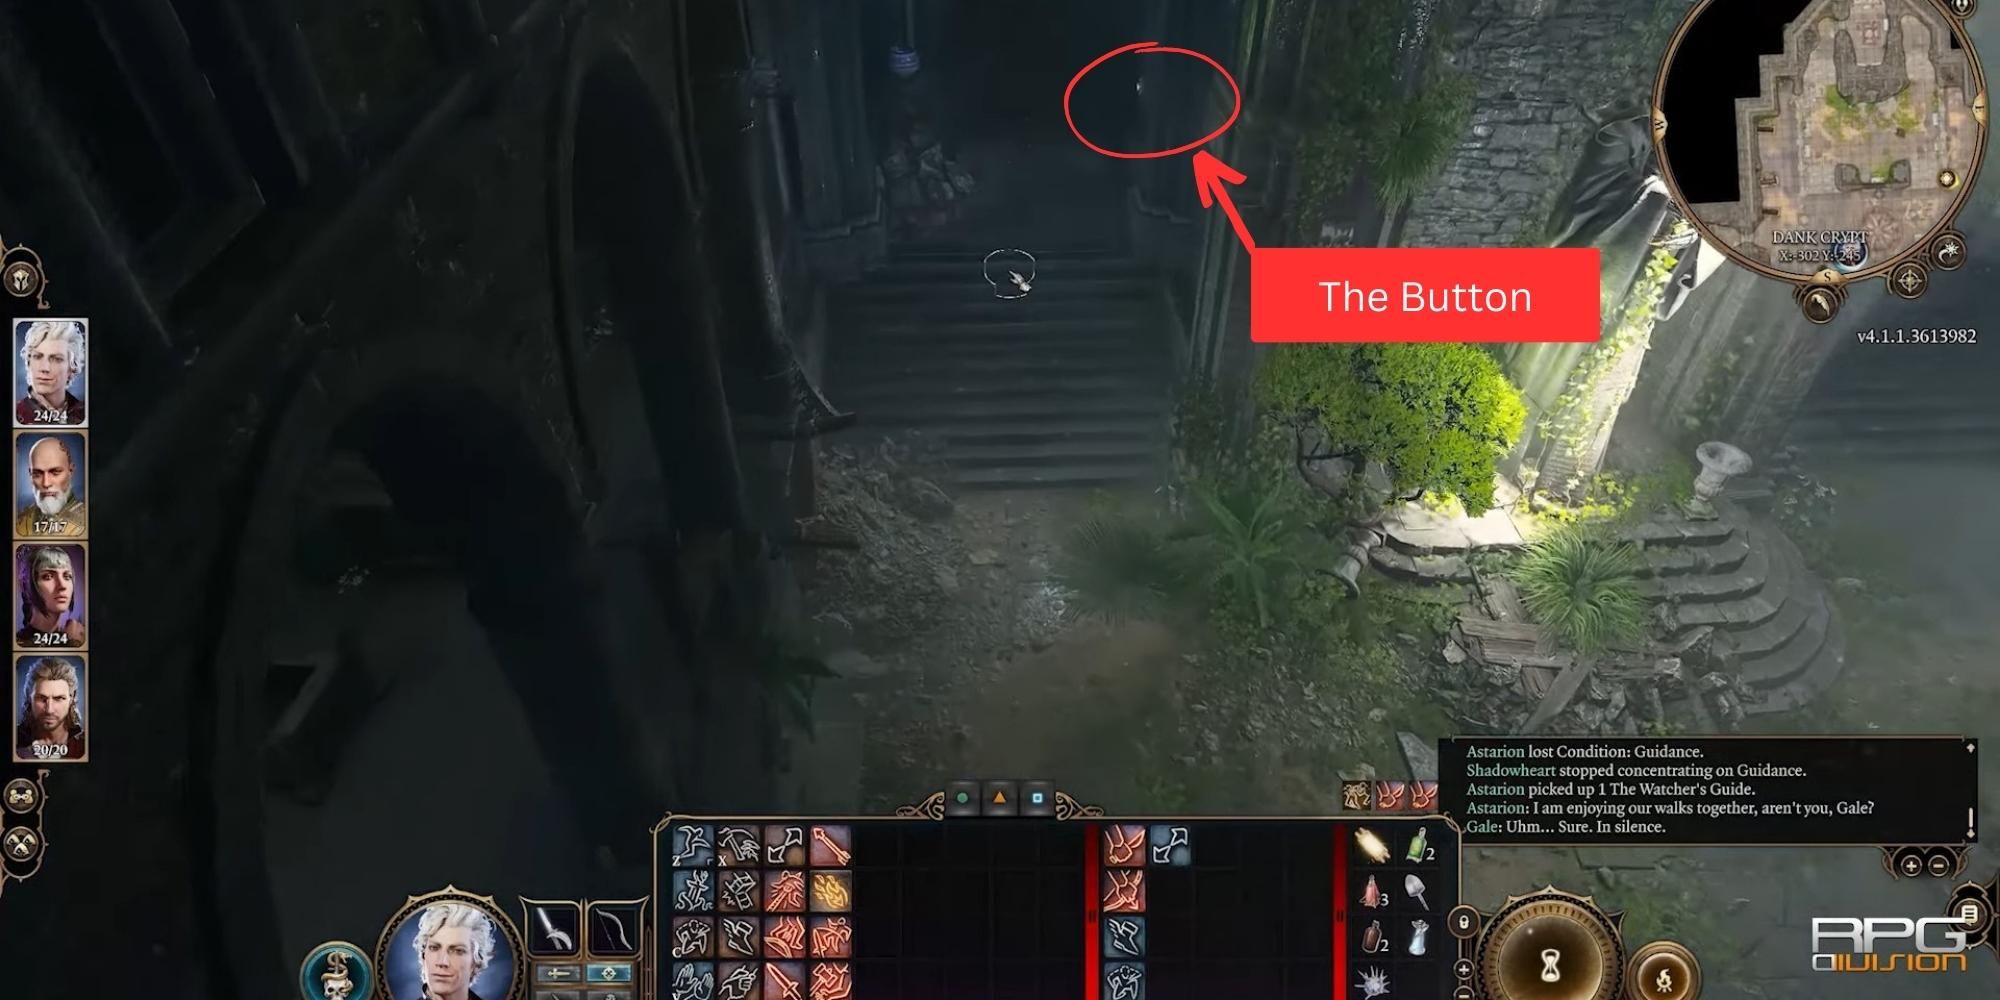 dank crypt location of hidden button in baldur's gate 3